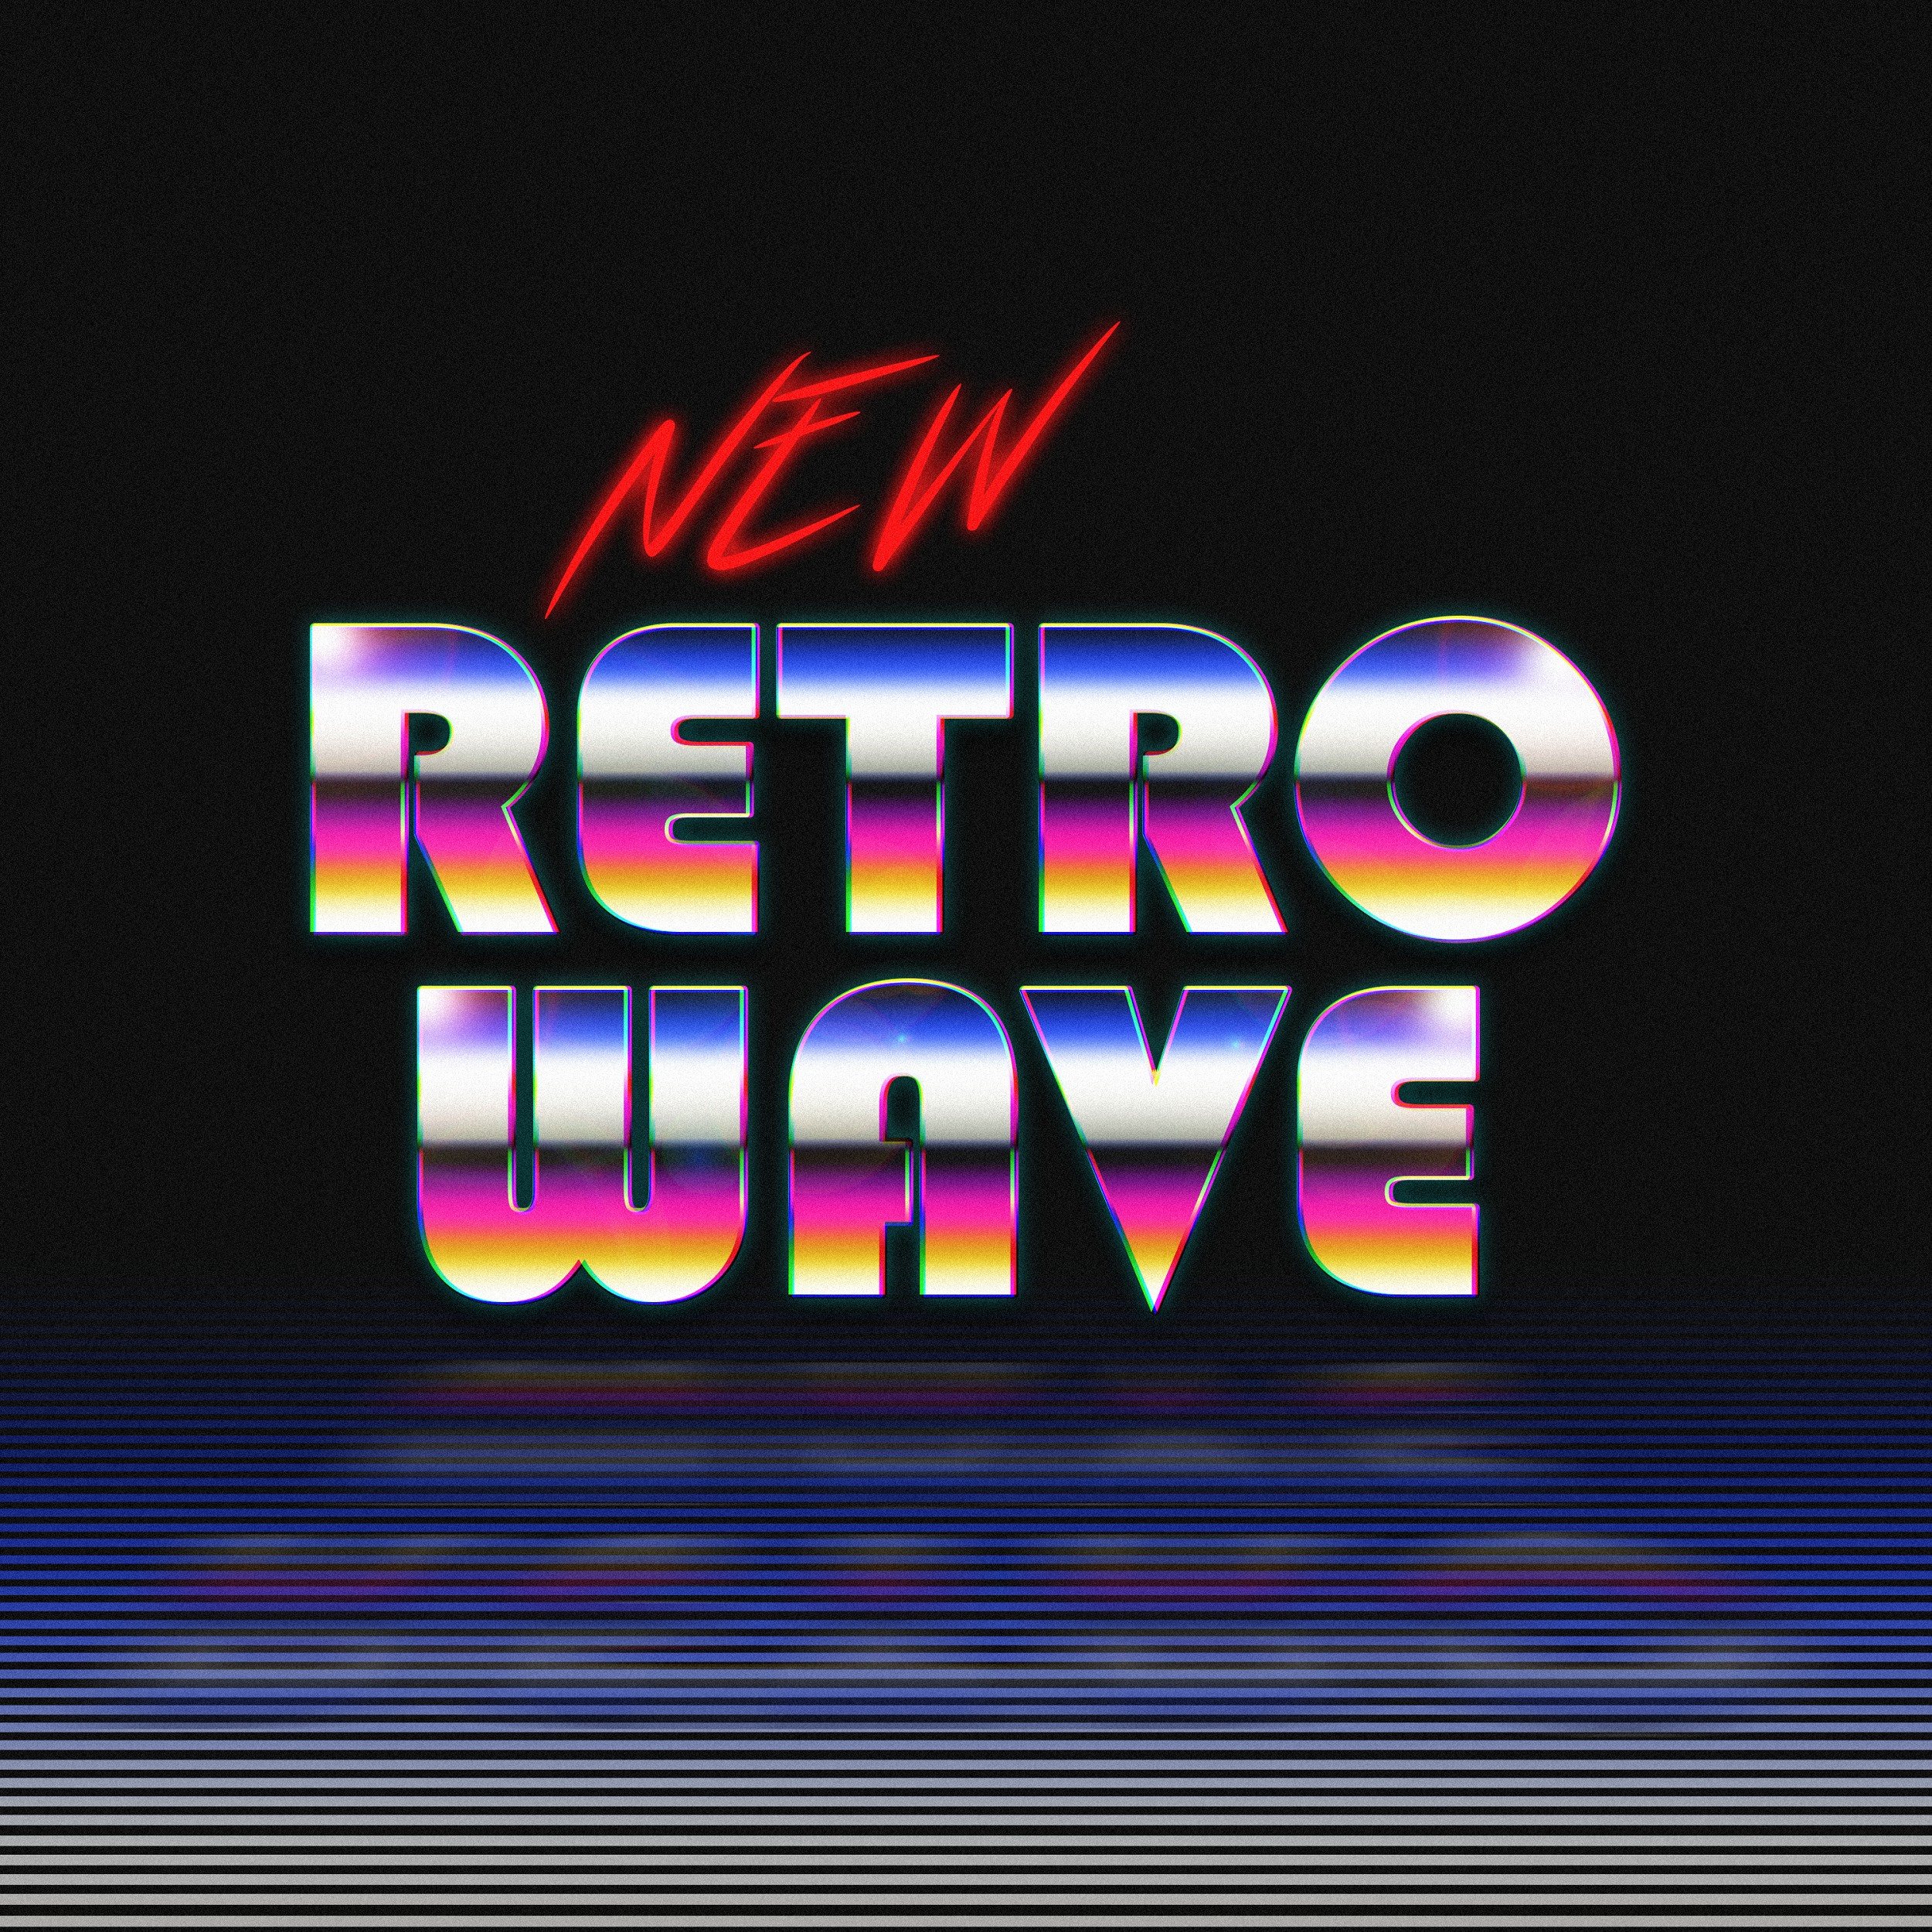 New Retro Wave, Typography, Digital art, 1980s, Neon Wallpaper